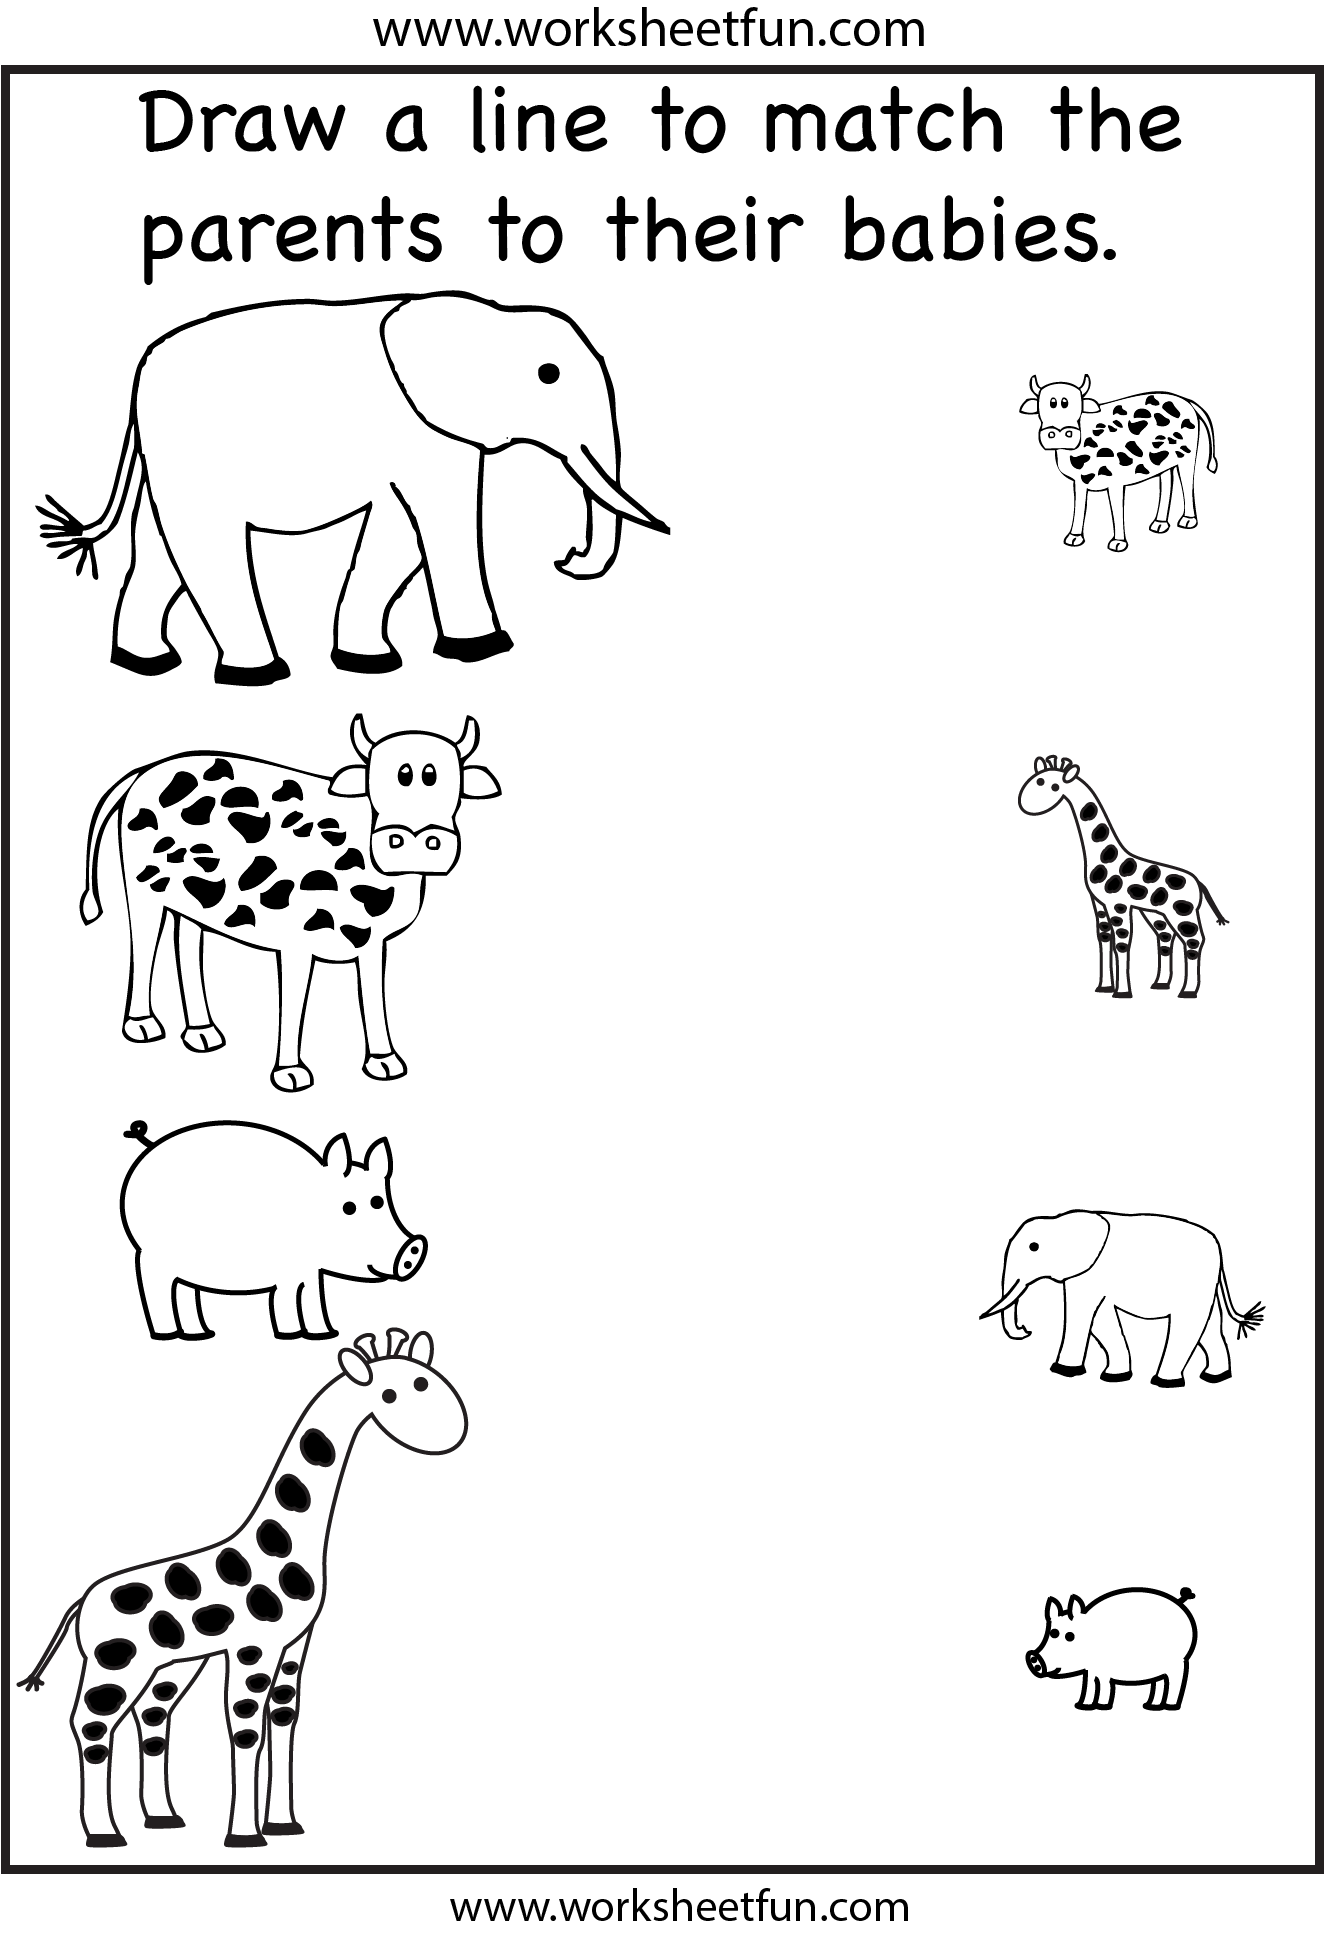 12 Best Images of Short A Worksheets For Preschool